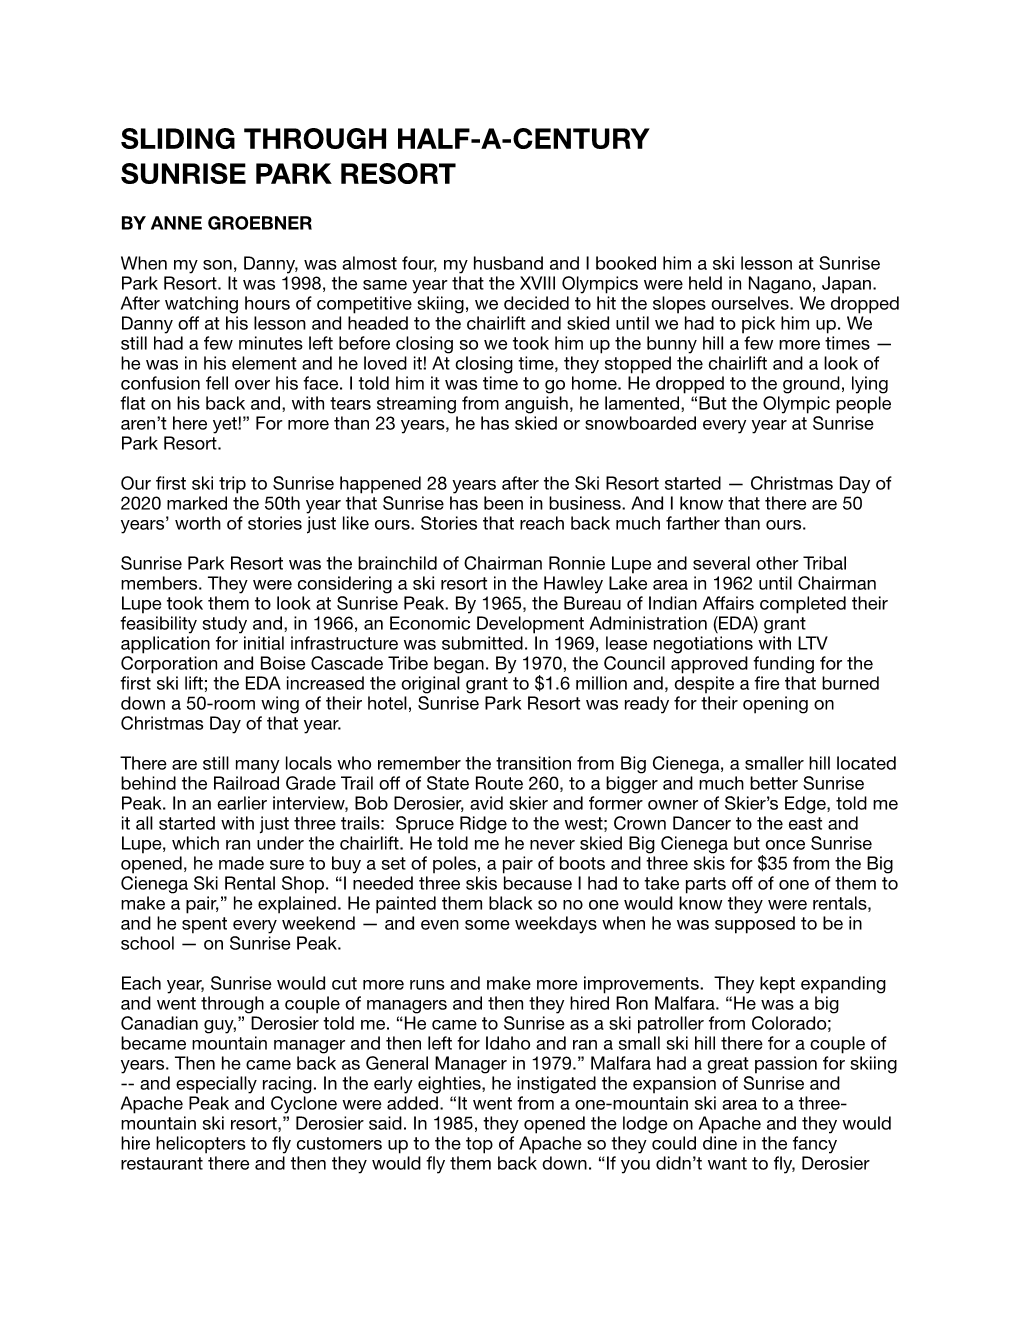 WEB GYMOAZ-01-21 Sunrise Park Resort 50Th Article-Anne